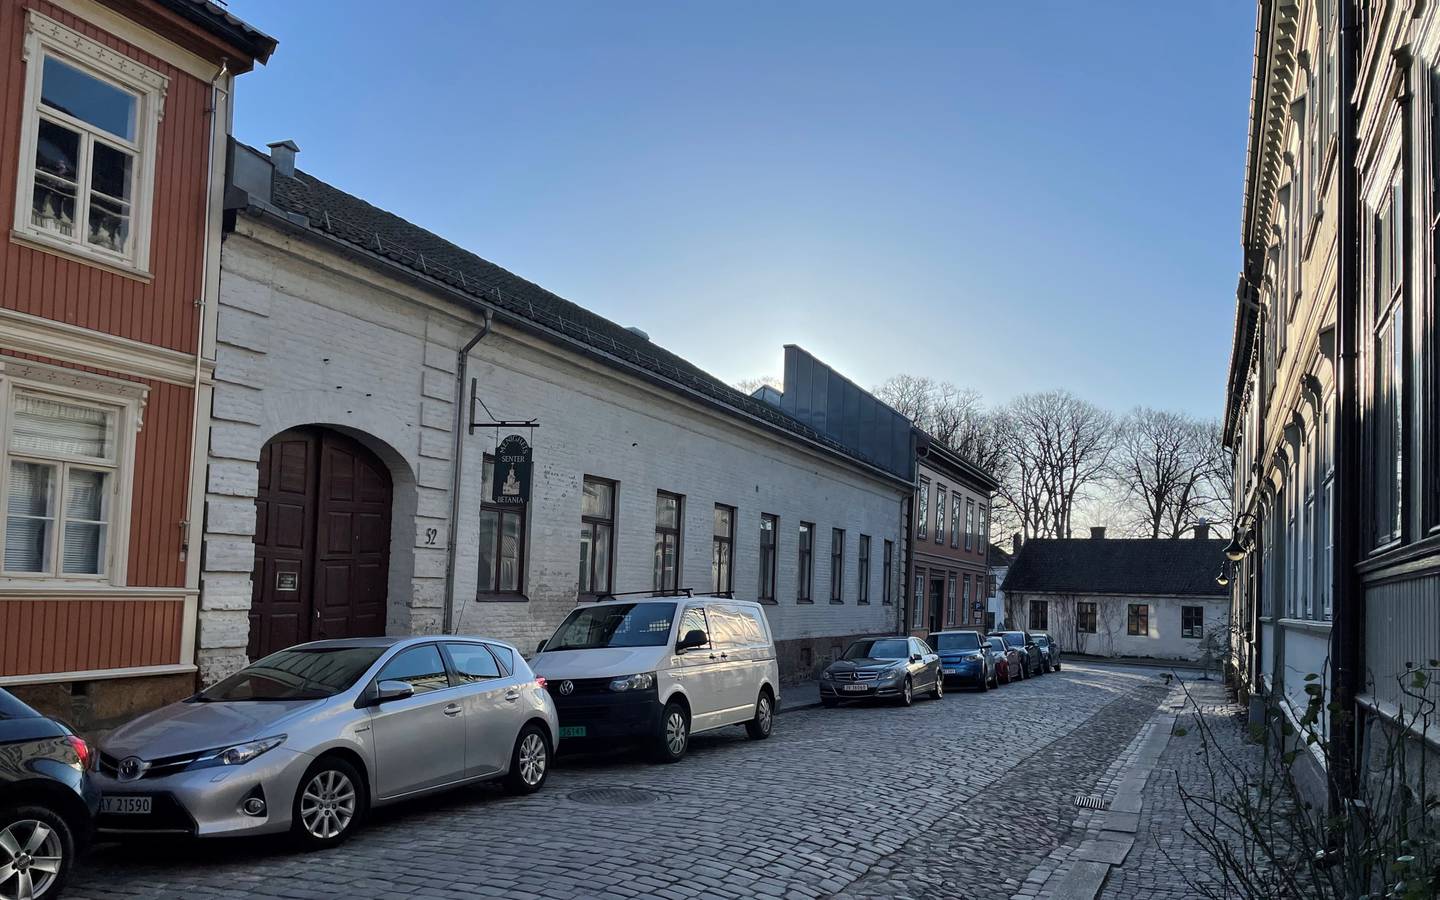 Betania menighetssenter ligger i Kasernegaten 52 i Gamlebyen, Fredrikstad.